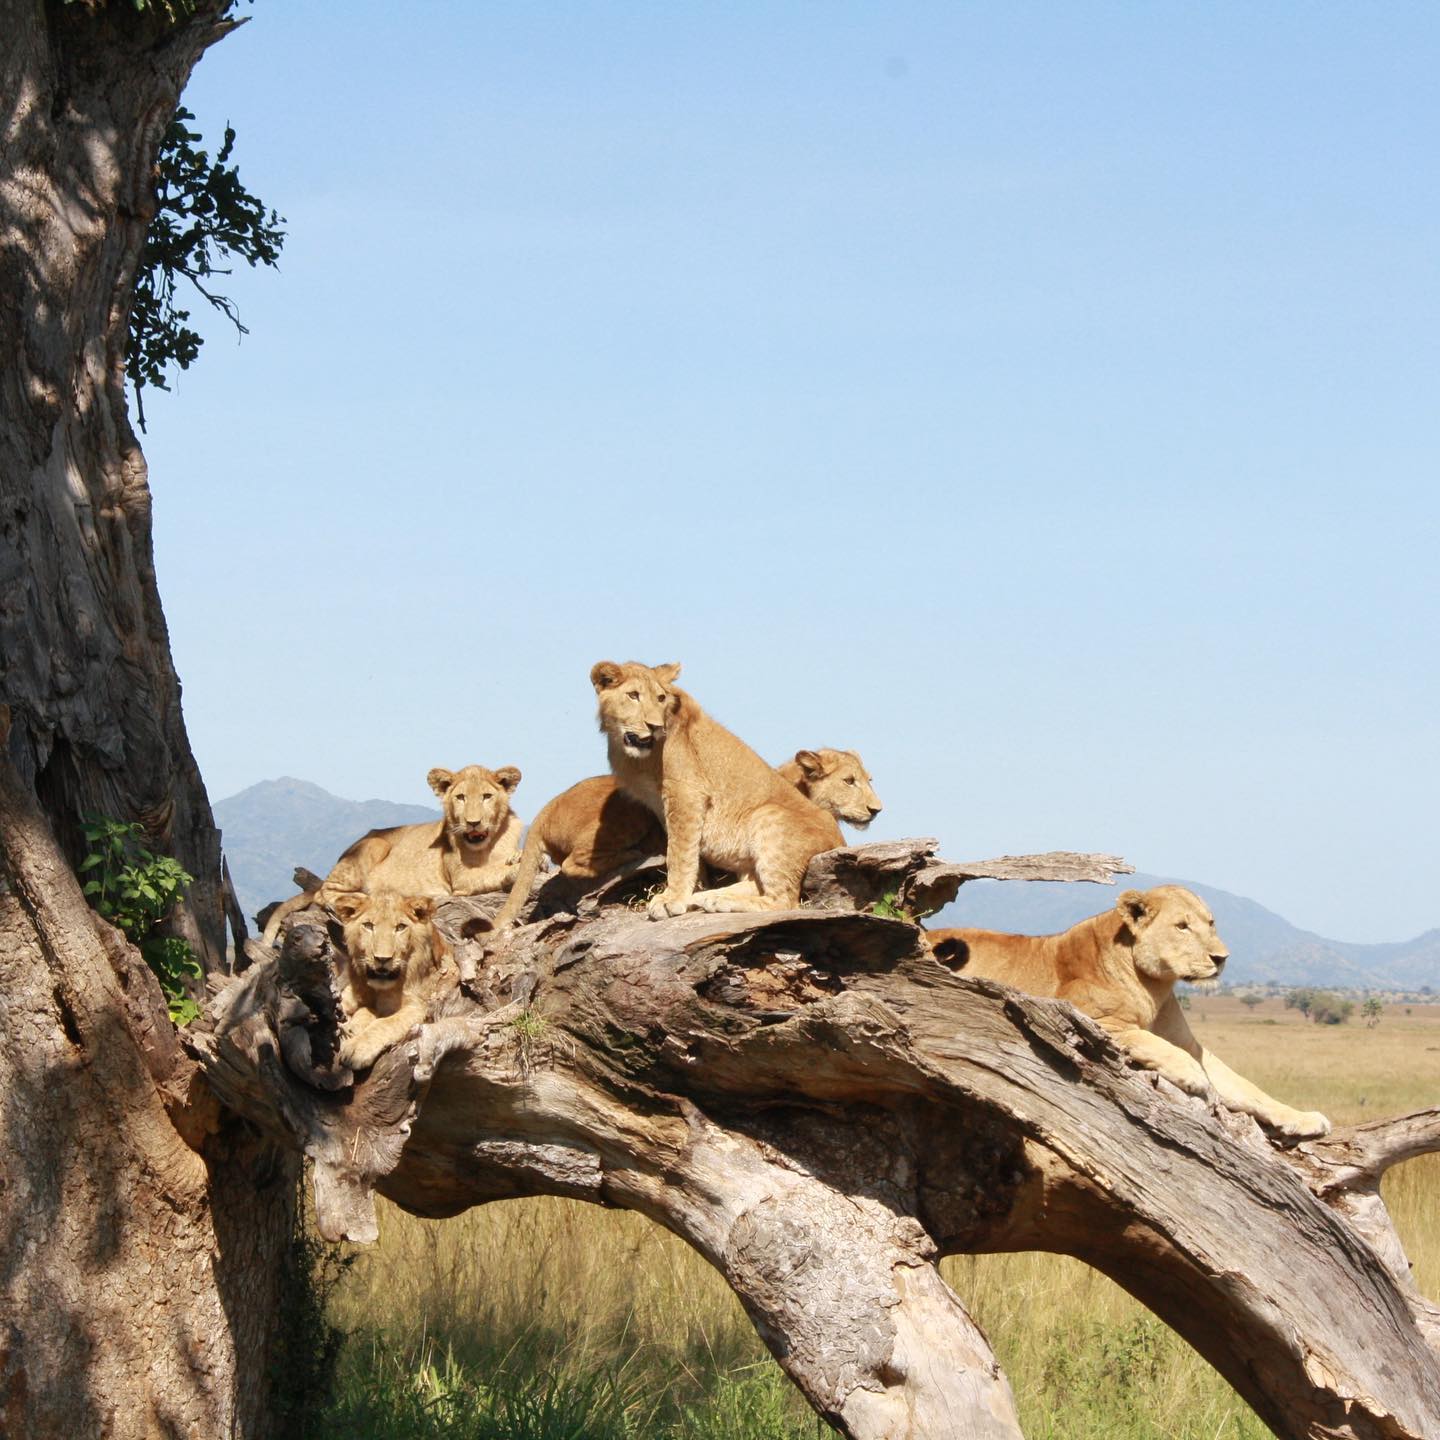 Apoka safari lodge -Kidepo Valley